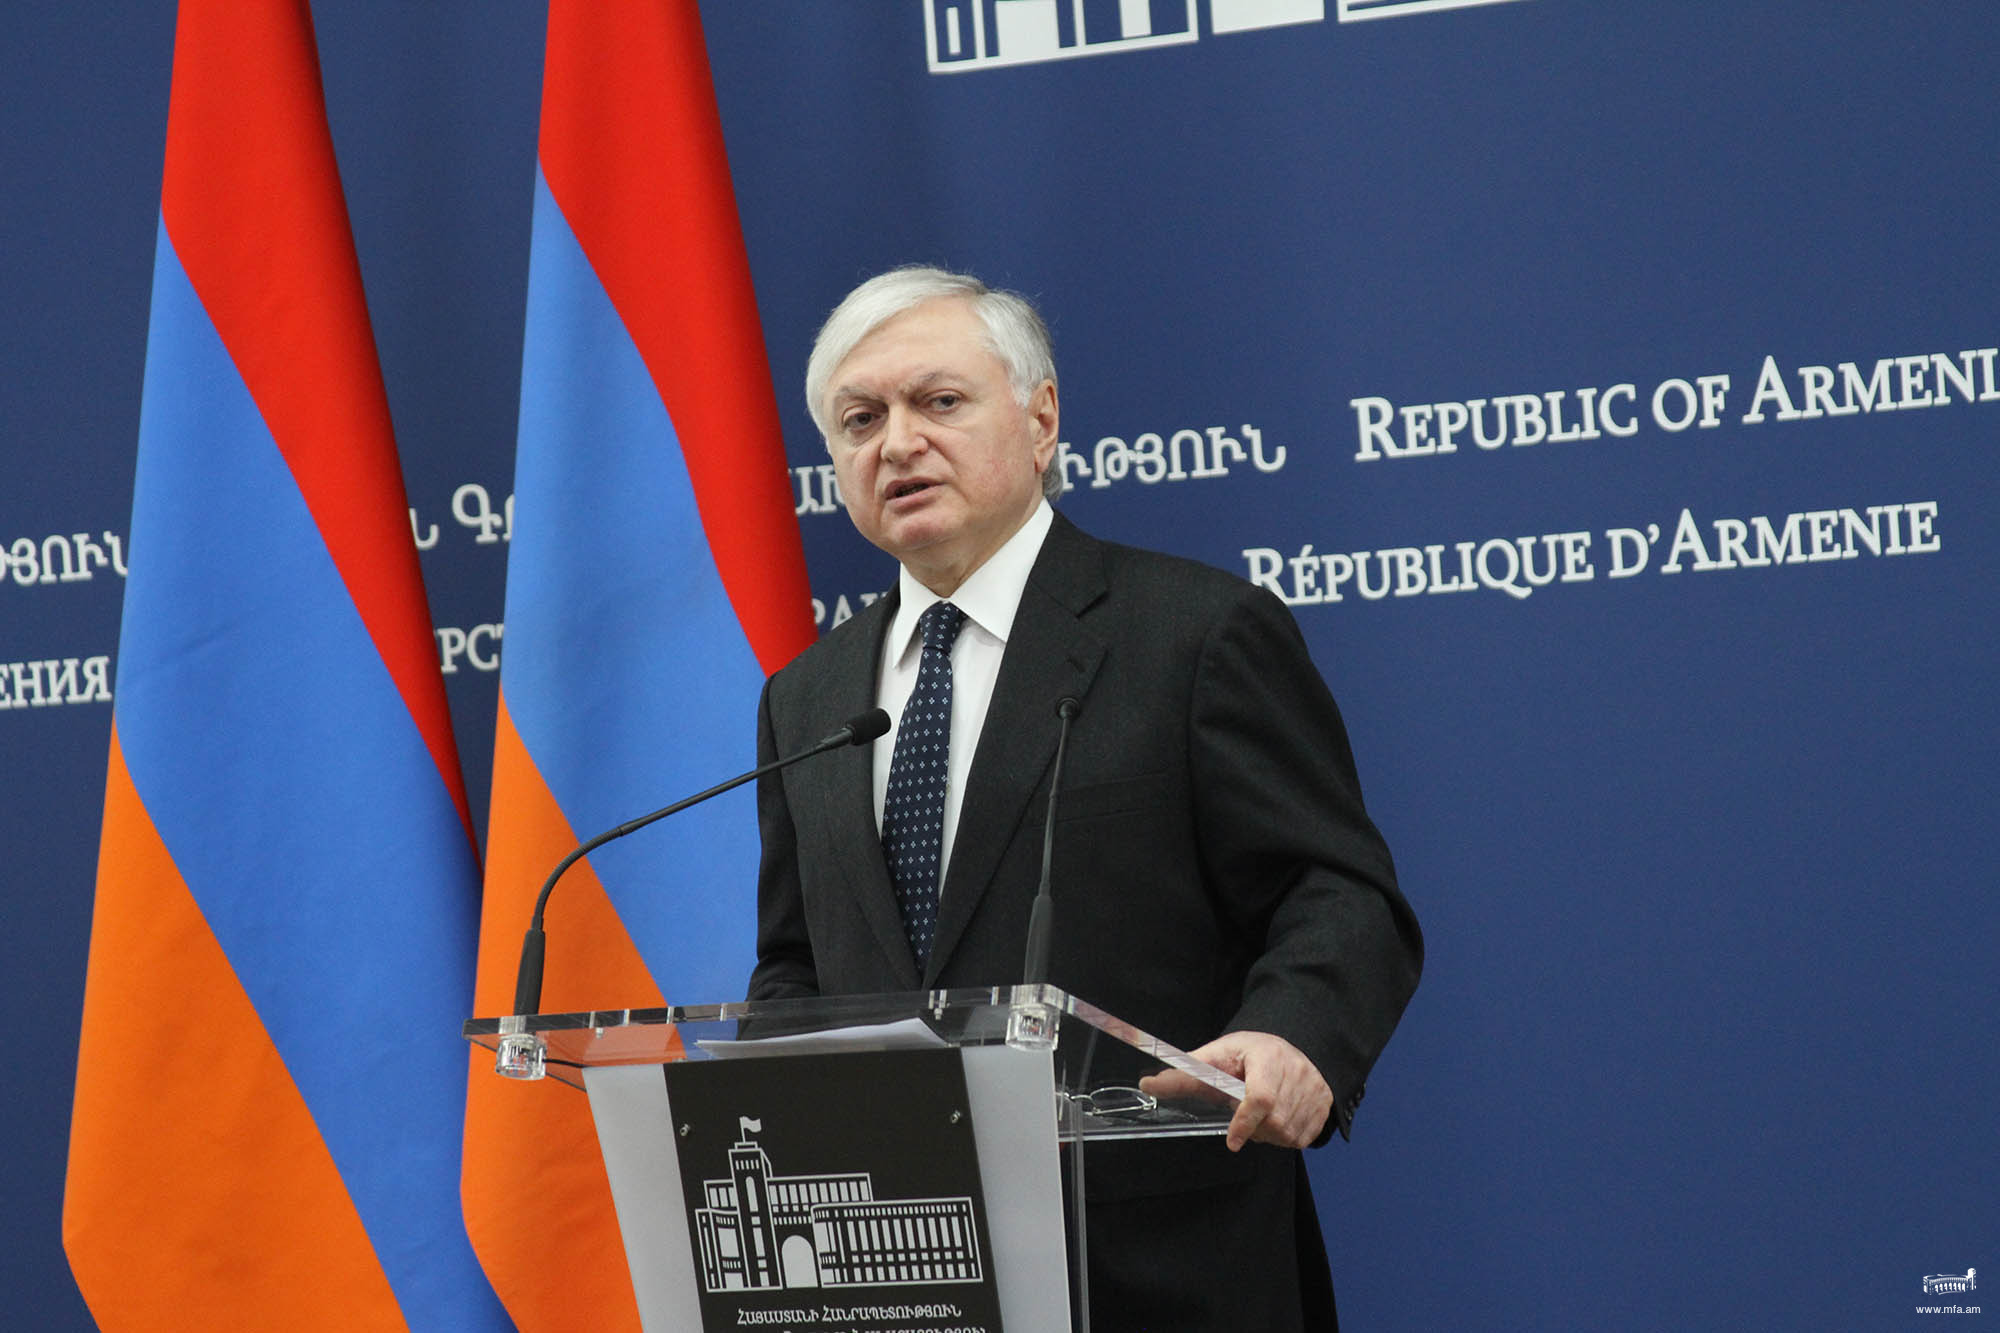 Заявление министра иностранных дел Эдварда Налбандяна  в связи с признанием Геноцида армян Палатой депутатов Чехии